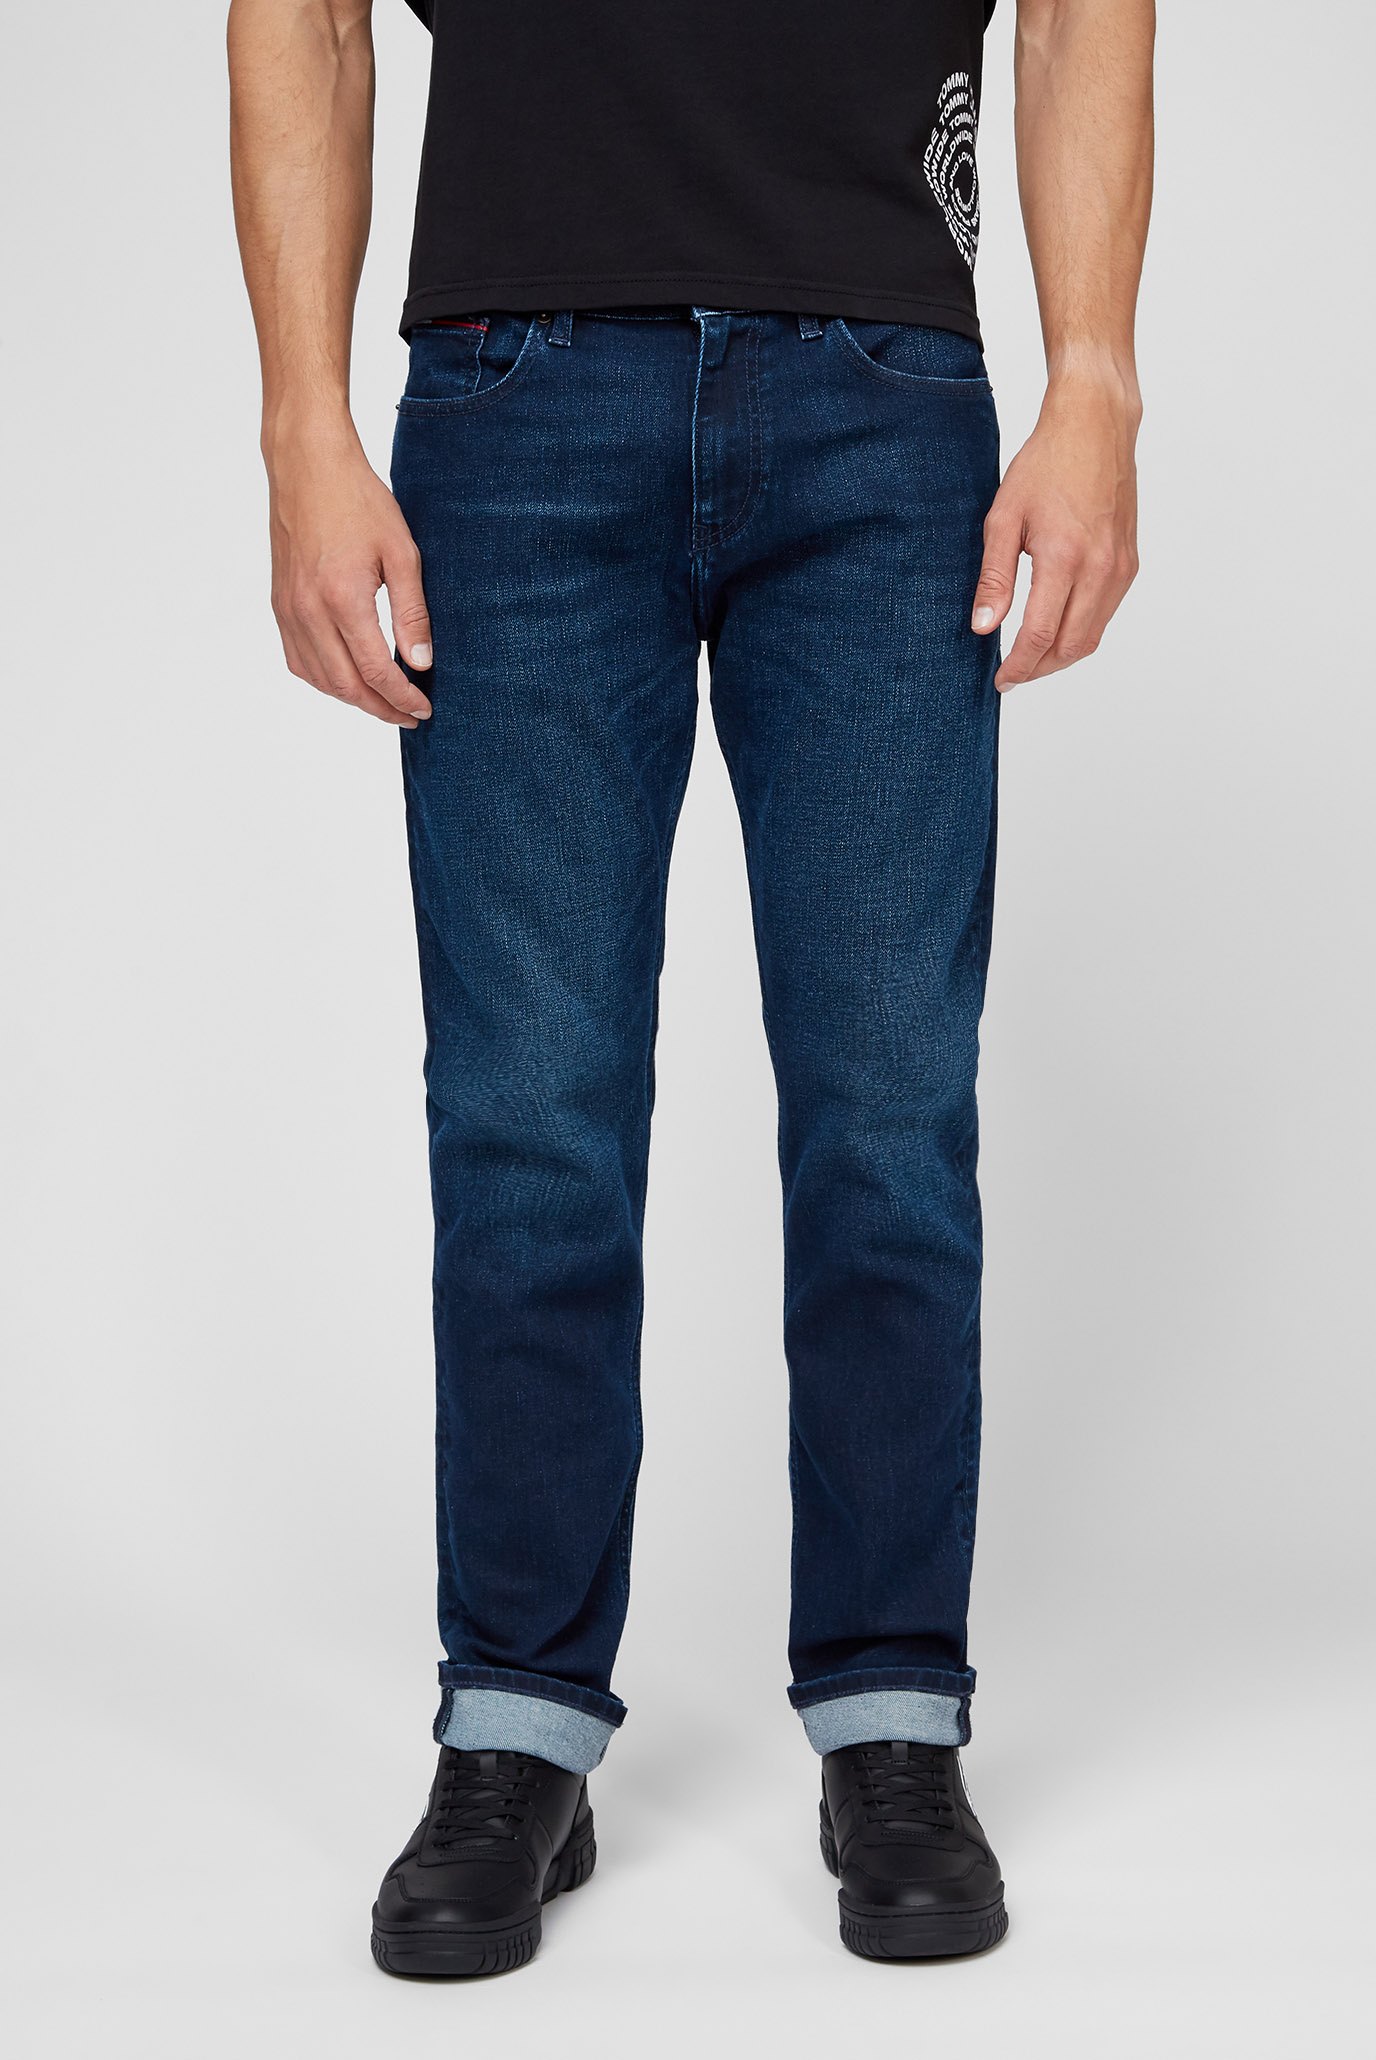 Чоловічі сині джинси RYAN REG STGHT BE162 1